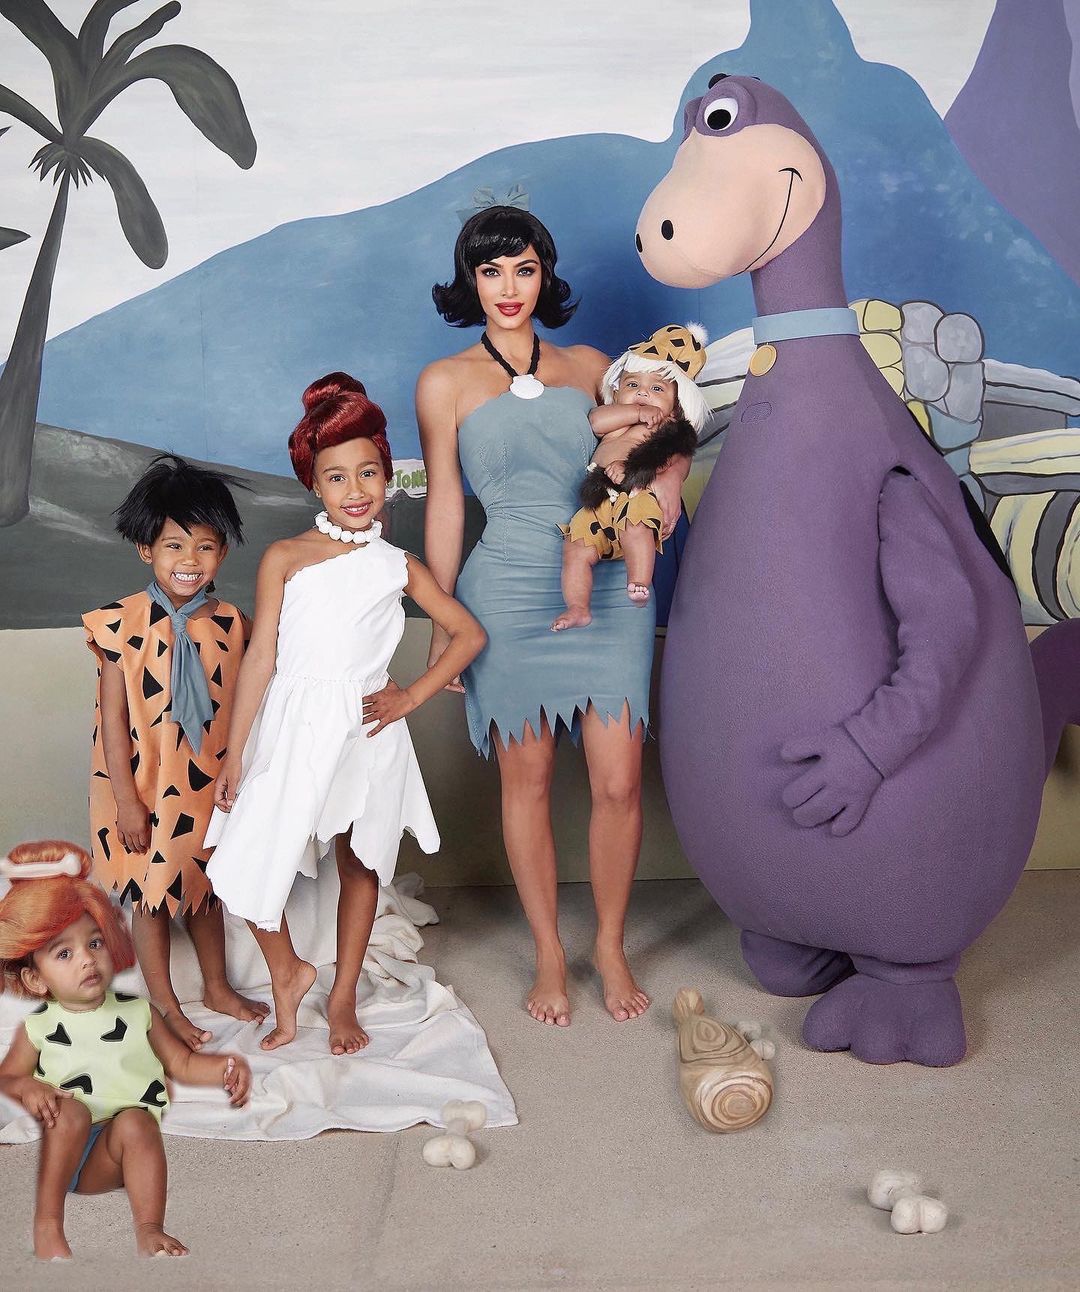  inspirações para Halloween: Kim Kardashian e família fantasiados de "Os Flinstones"